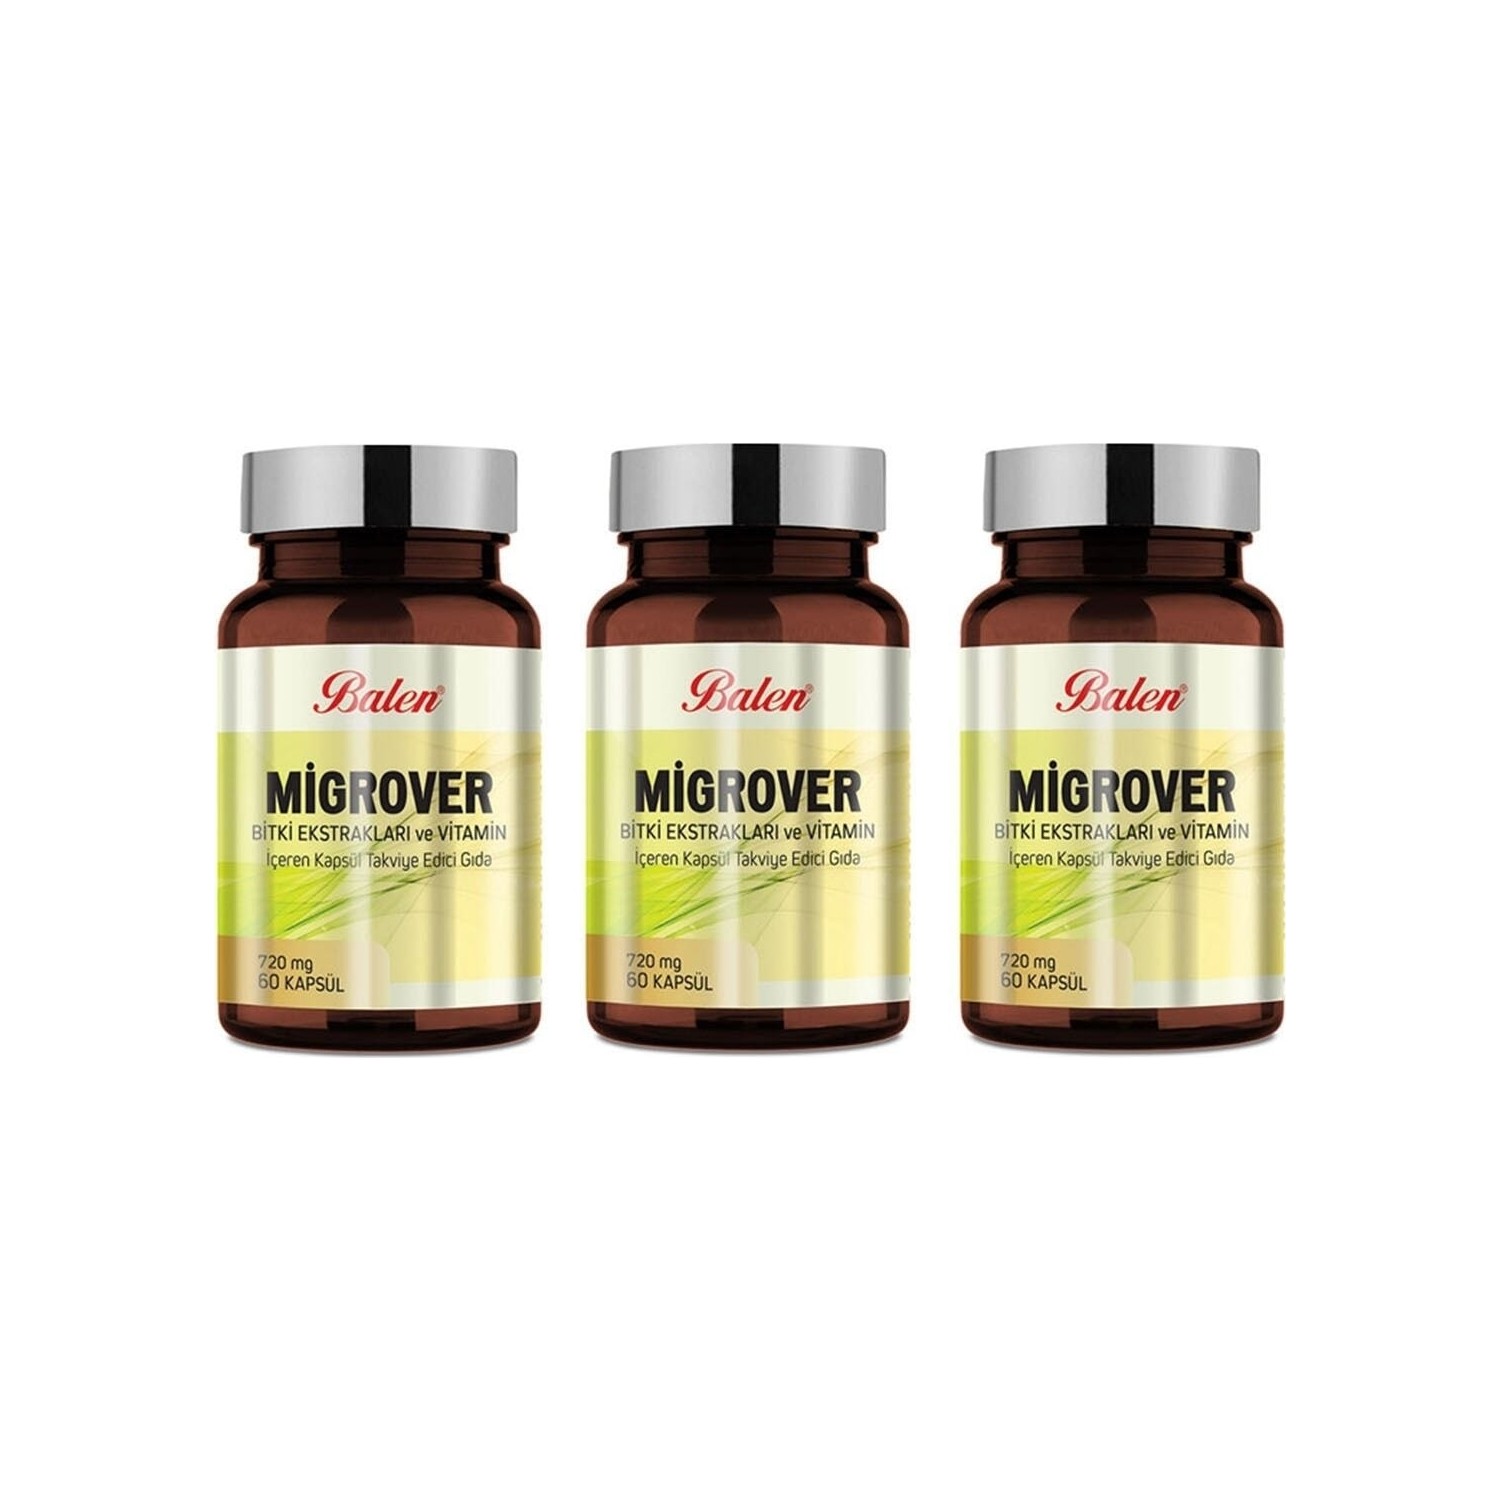 Капсулы Balen Migrover, содержащие растительные экстракты и витамины, 60 капсул, 720 мг, 3 штуки balea vitamin c concentrate 7 capsules